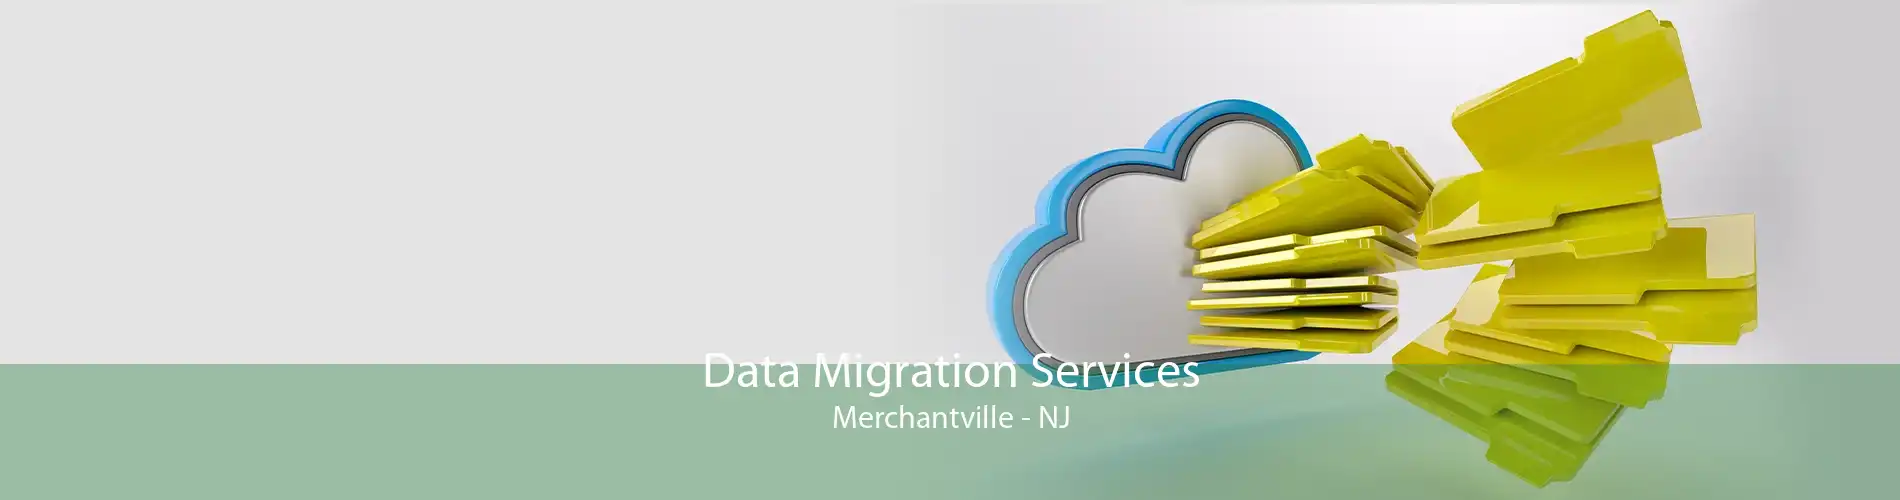 Data Migration Services Merchantville - NJ